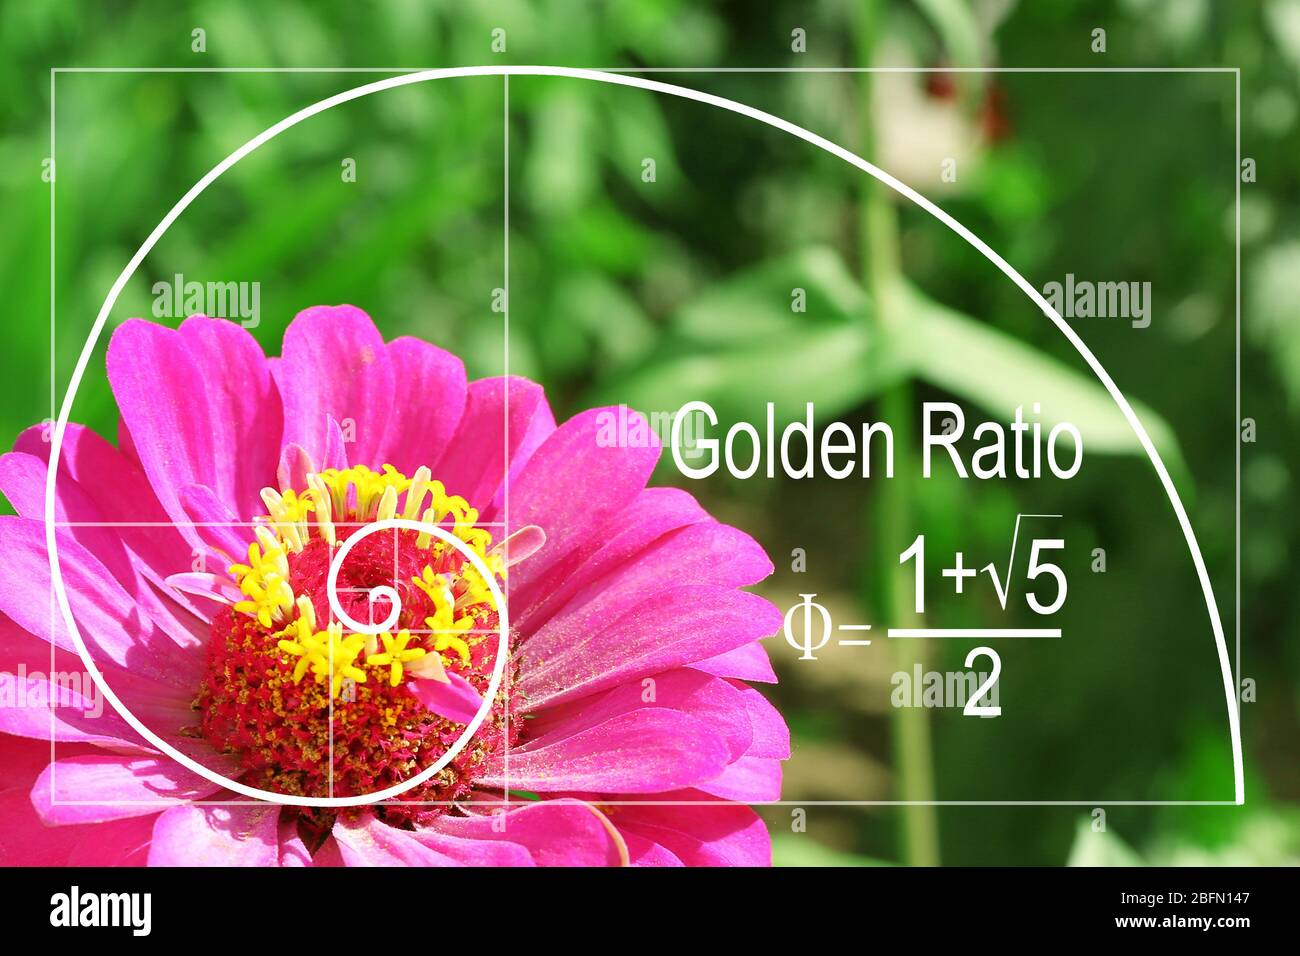 Golden Ratio In Nature